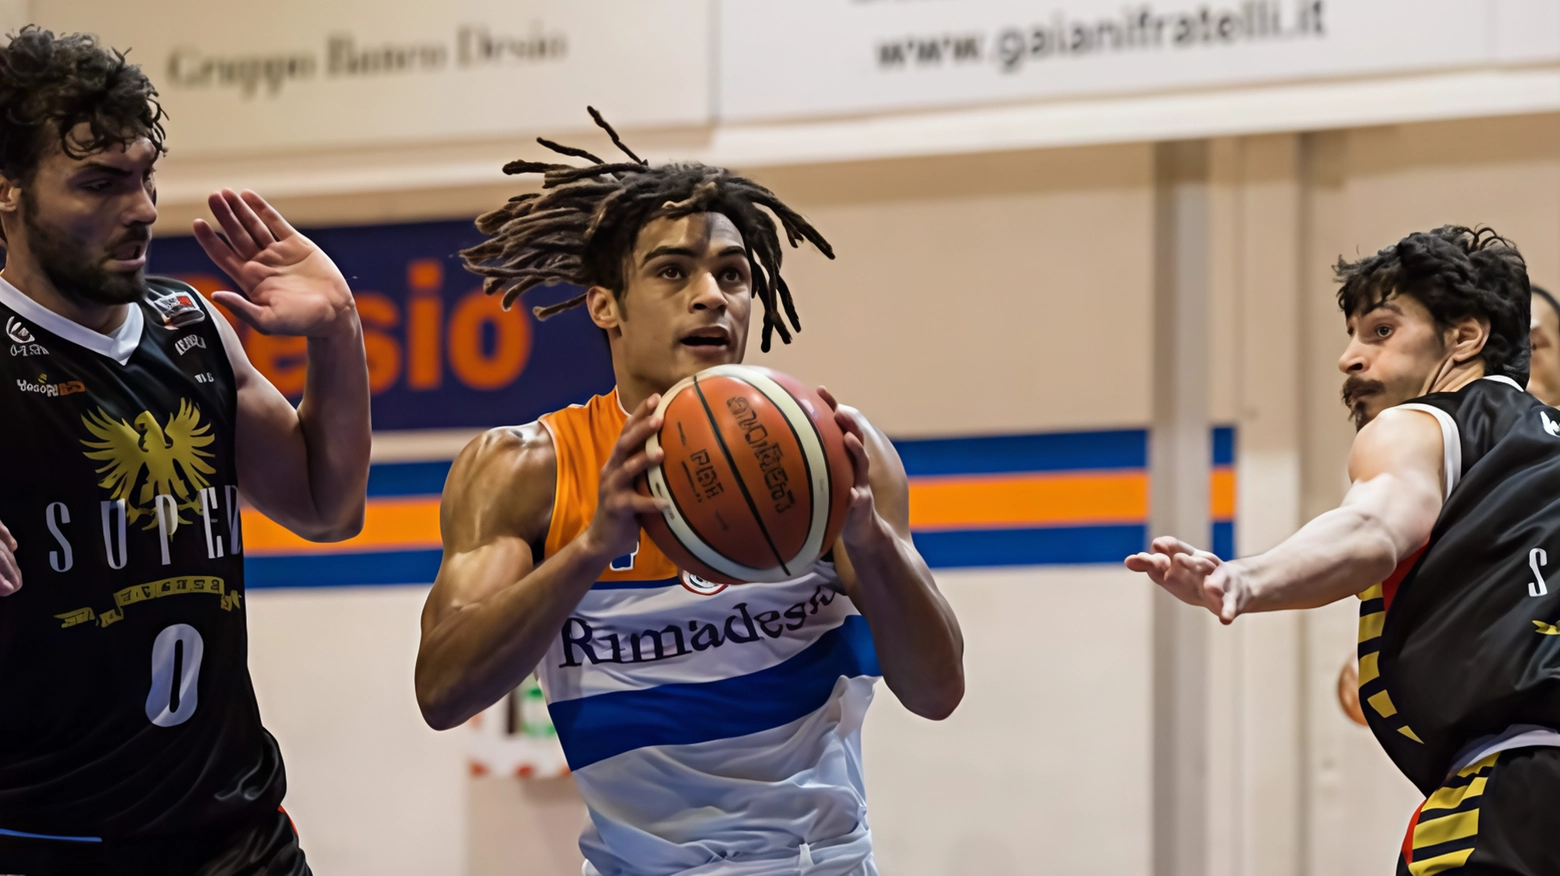 Il giocatore di basket Daniele Perez torna alla Rimadesio in Brianza dopo varie esperienze. La squadra affronterà un girone di 20 squadre nella prossima stagione.